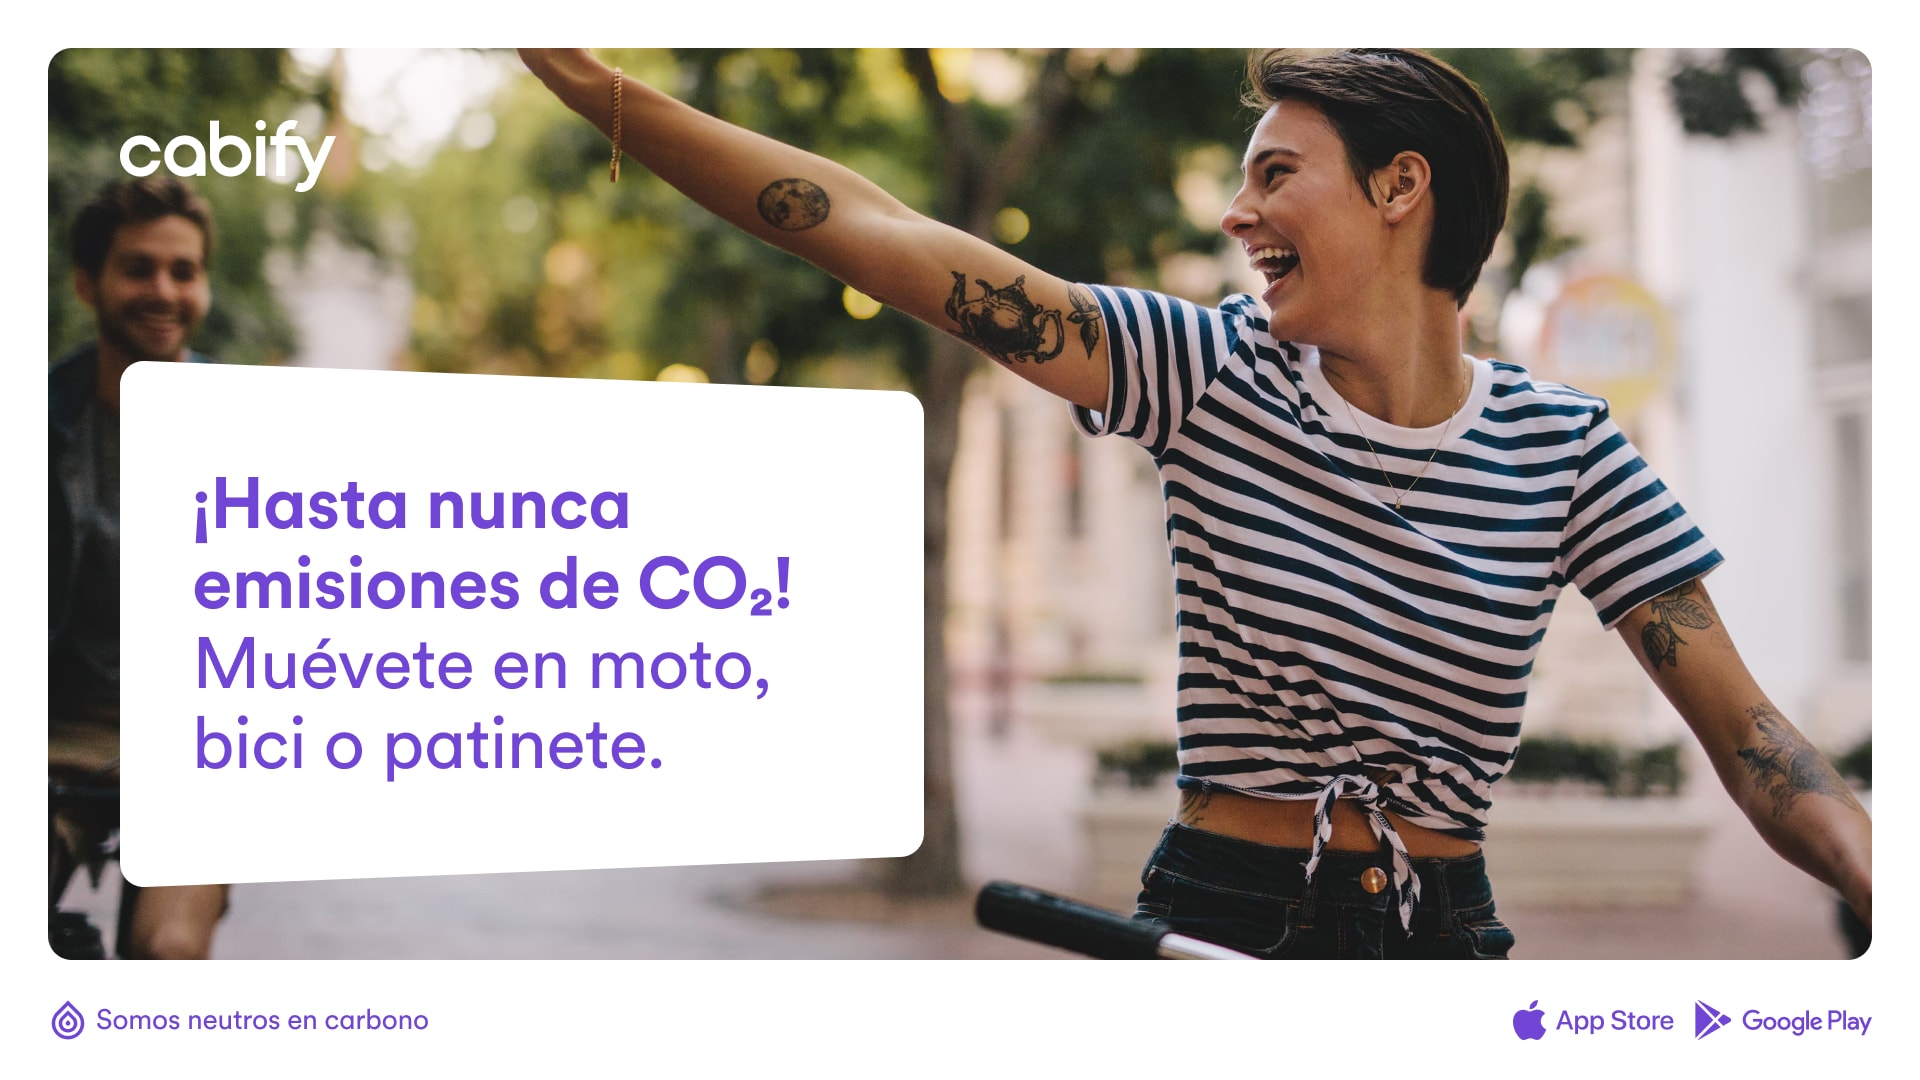 Un anuncio con una foto de una chica en bici y el texto "Hasta nueva emisiones de CO2. Múevete en moto, bici o patinete.